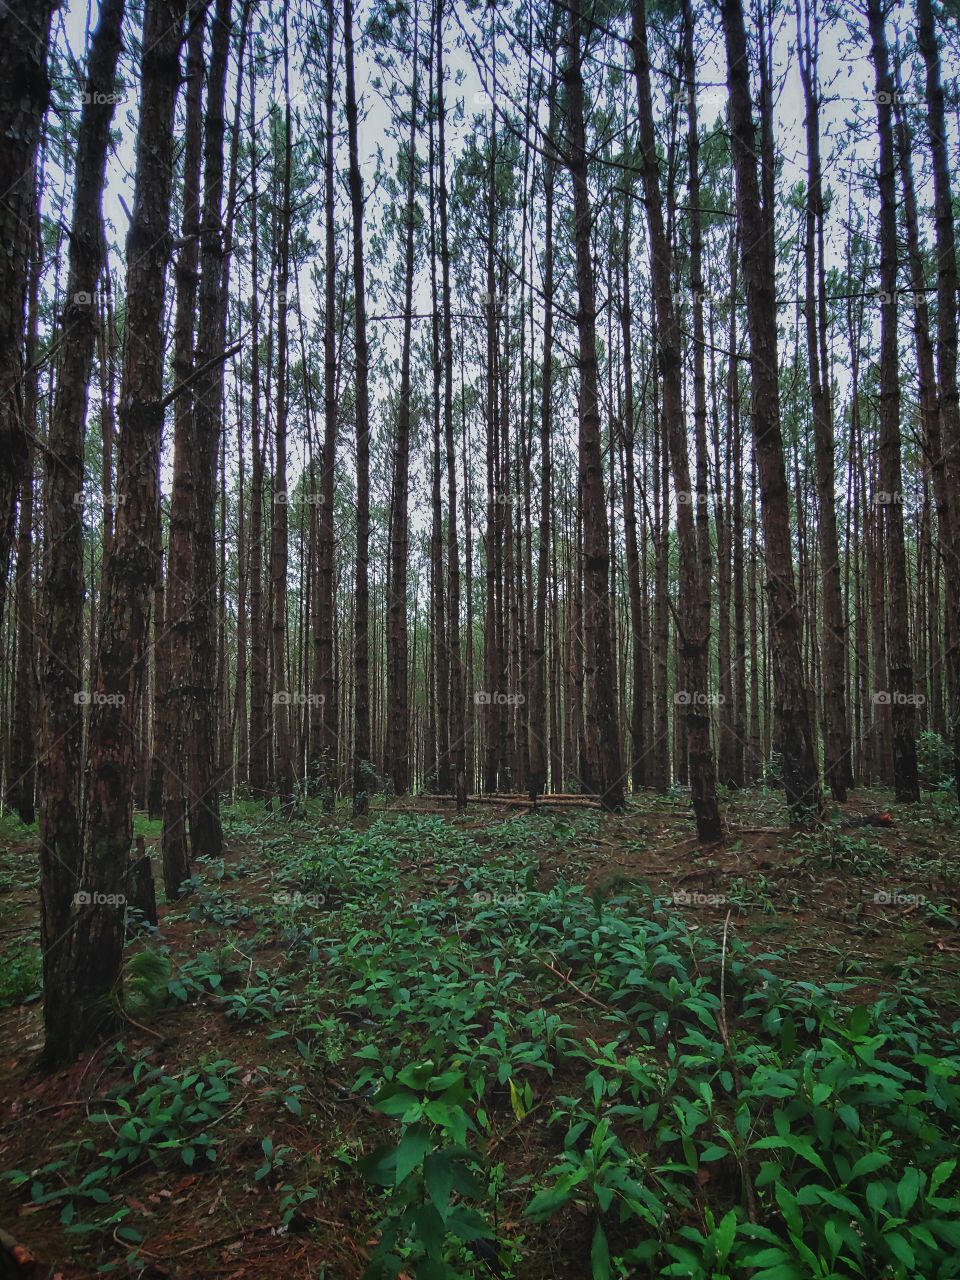 A wood of pine in Da Lat, Vietnam